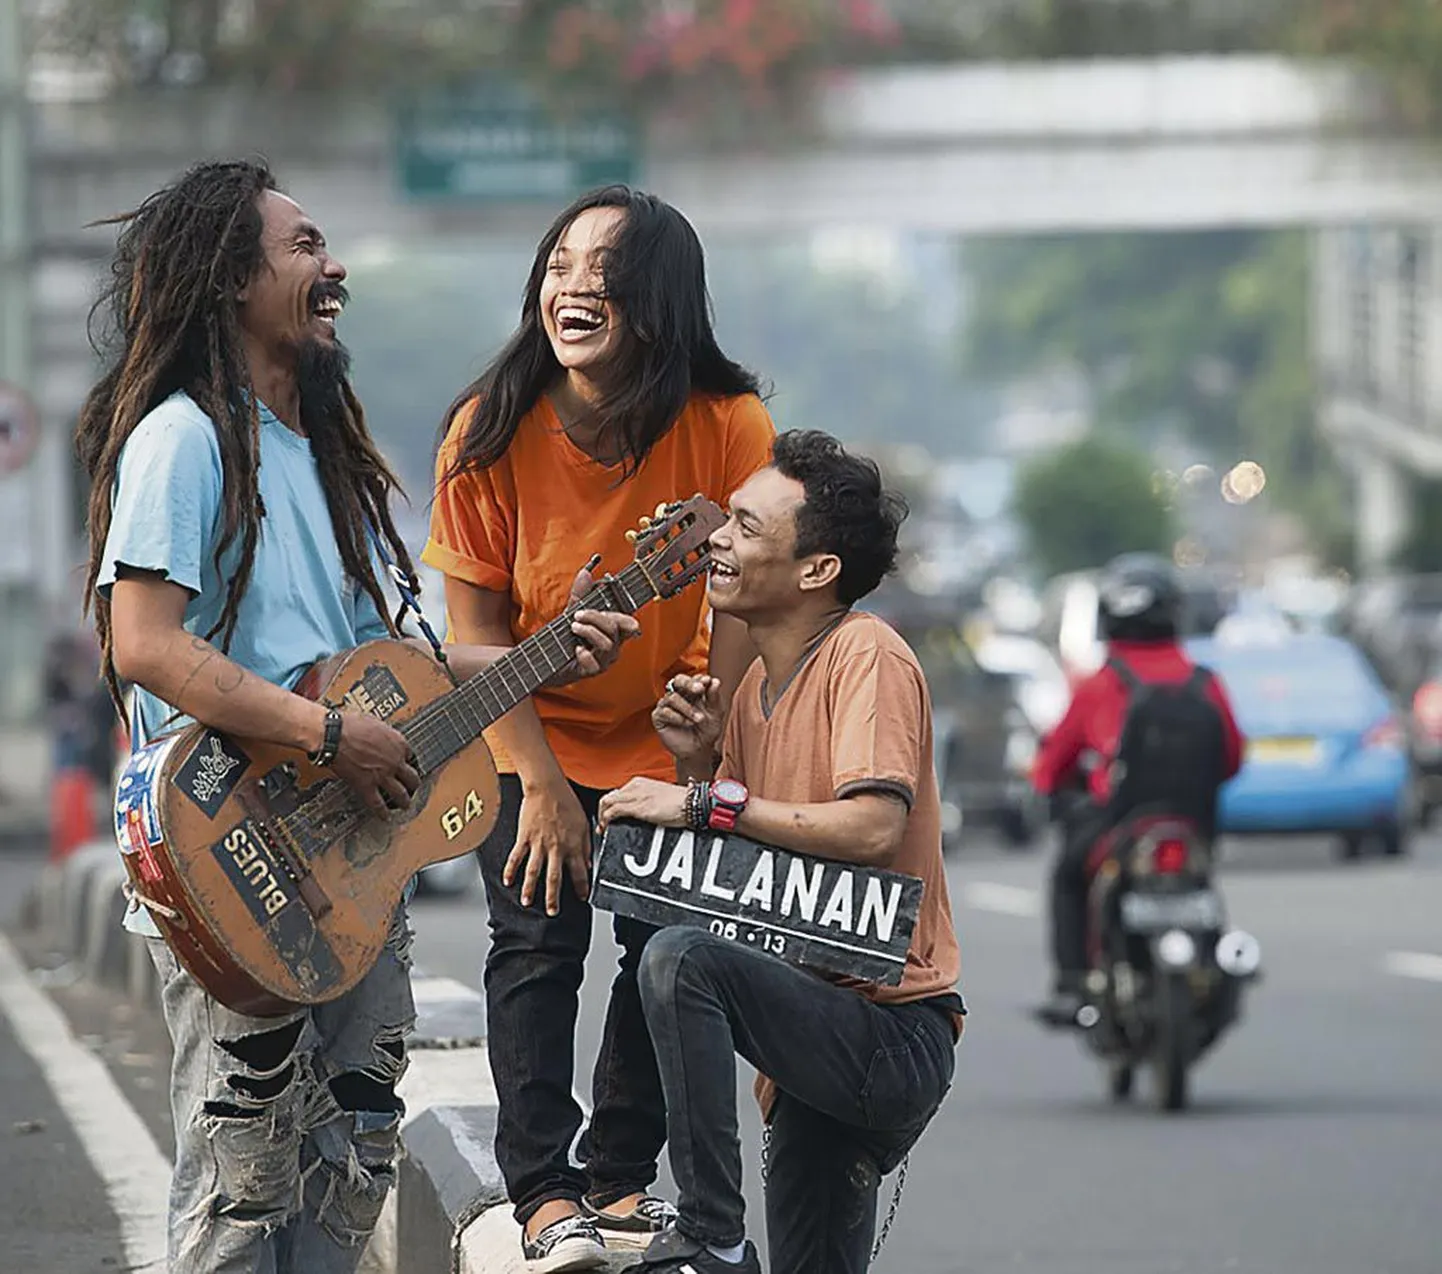 Muuseumiööl näidatakse uue kunsti muuseumis filmi “Jalanan: tänavamuusika” Jakarta tänavamuusikute elust.